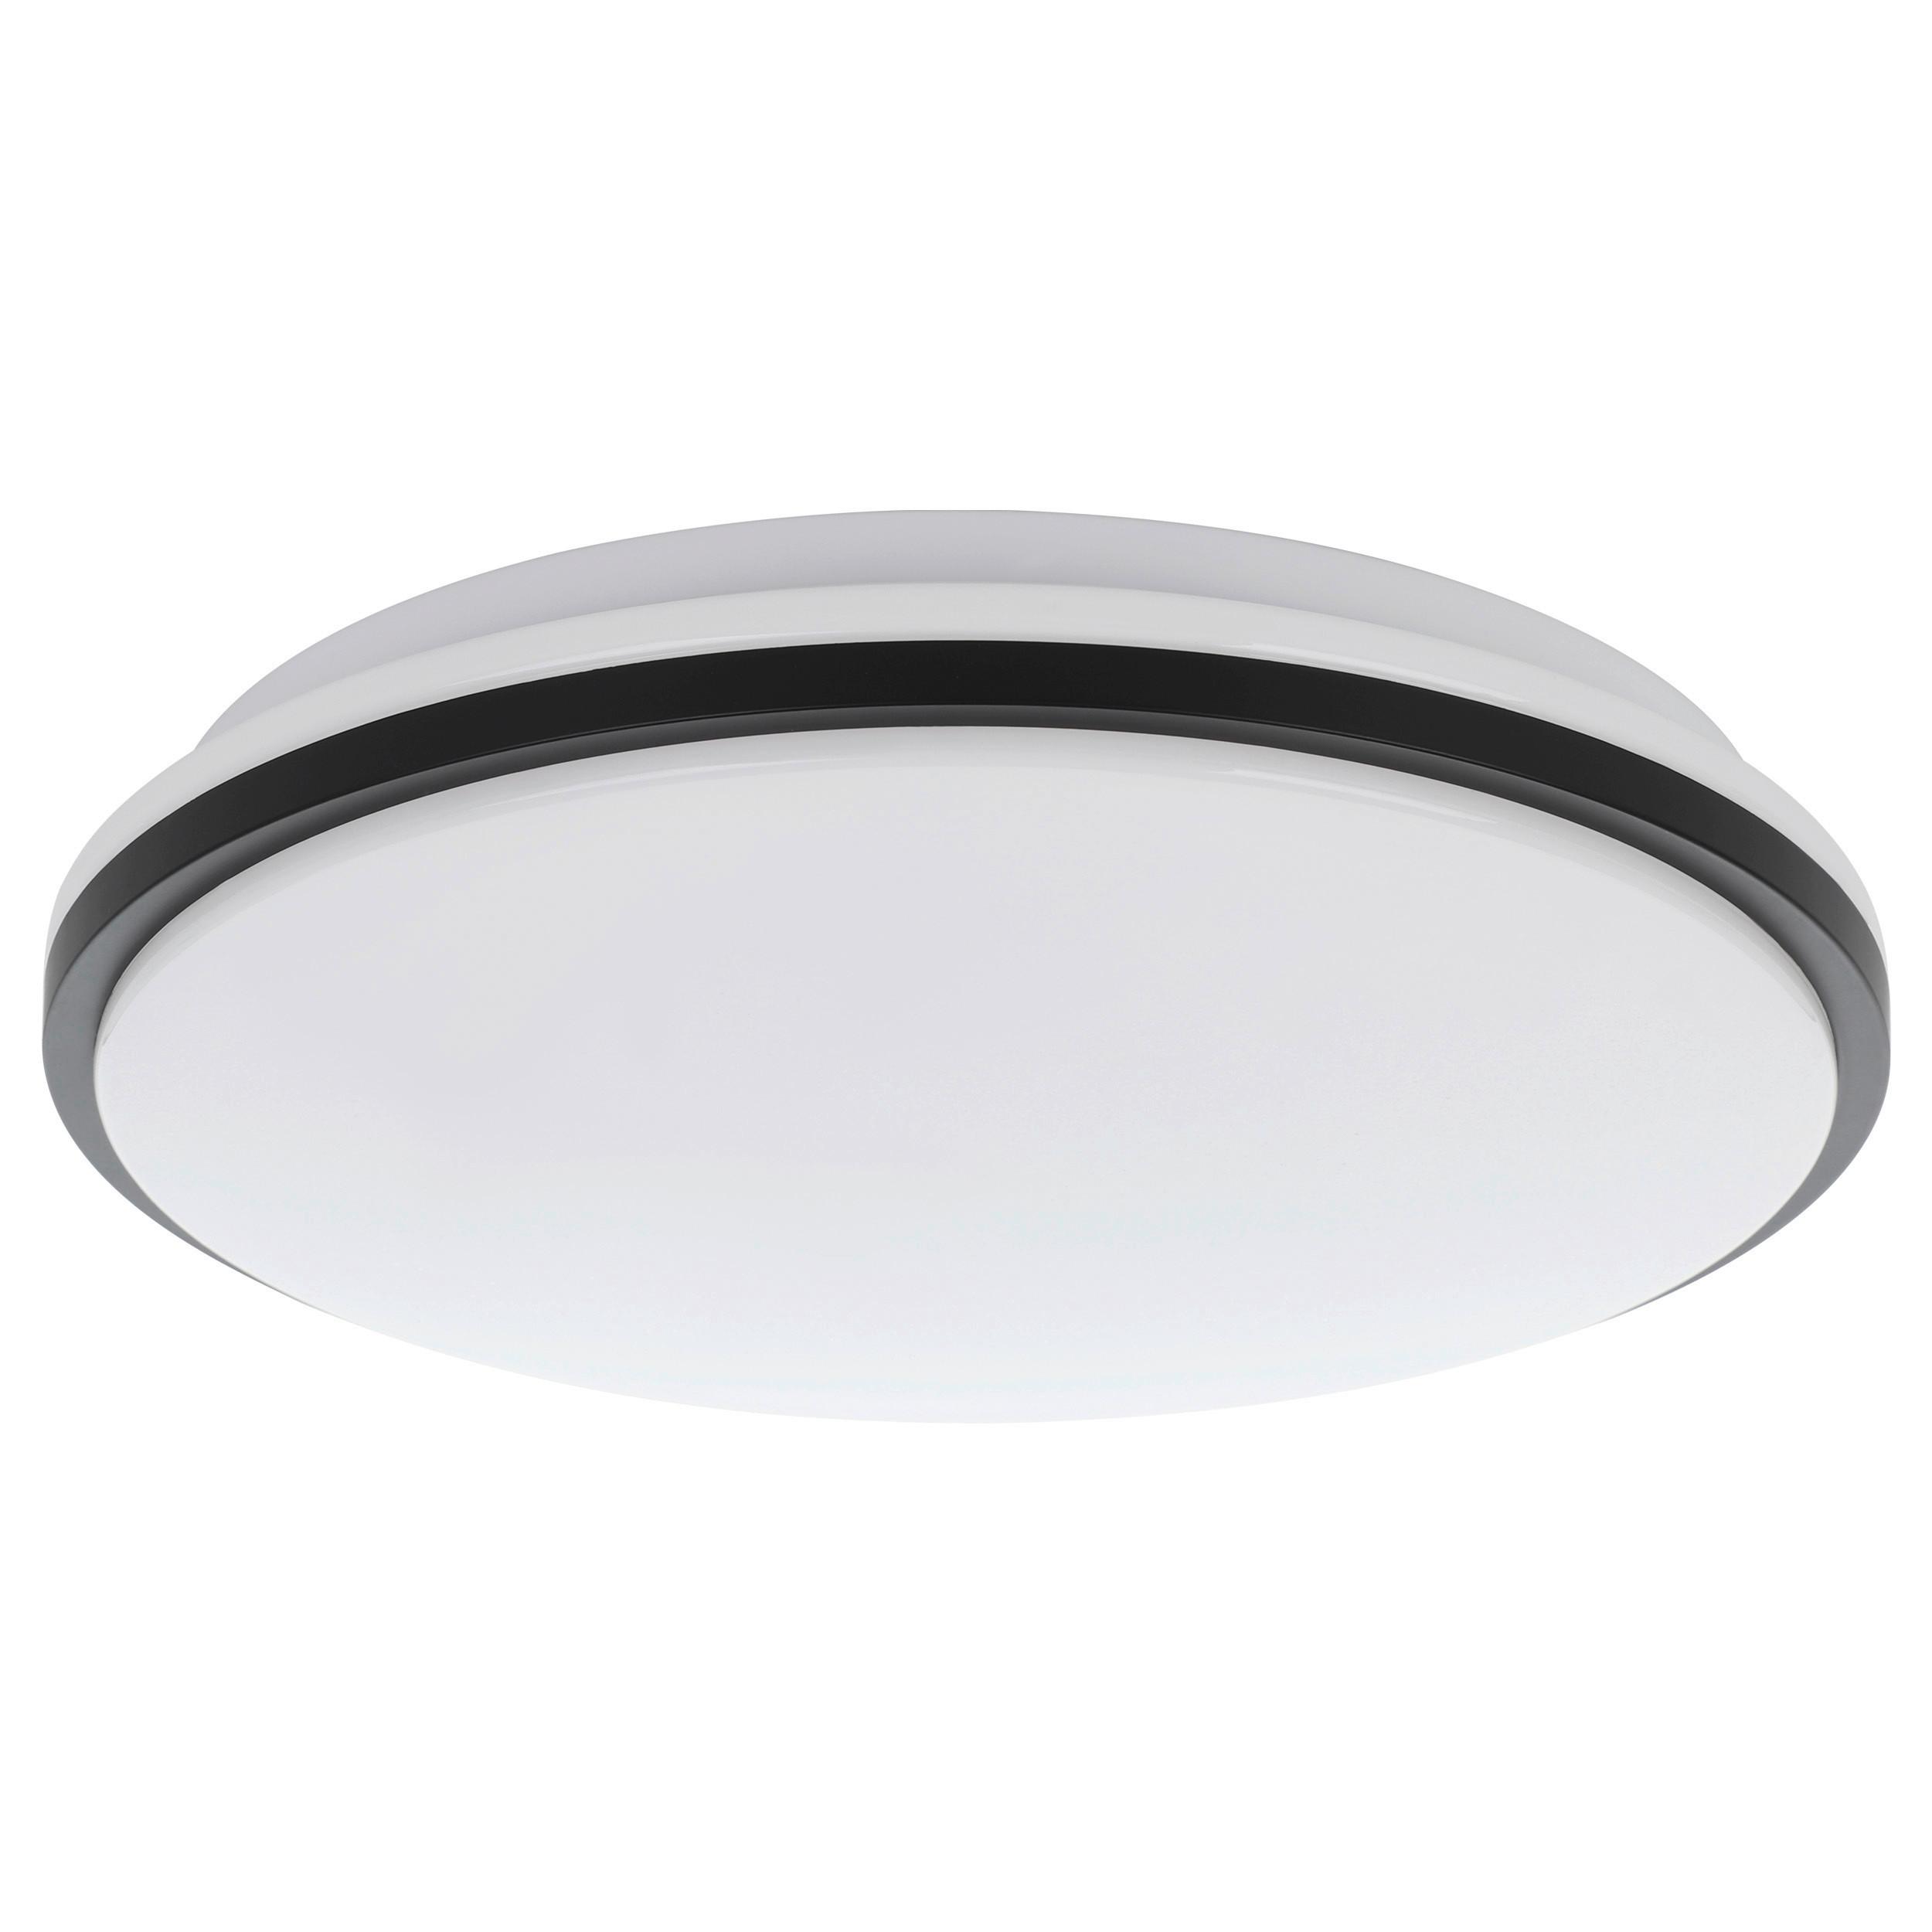 LED-Wandleuchte Marunella-S Schwarz/Weiss - Schwarz/Weiß, Basics, Kunststoff/Metall (34/6,5cm) - Eglo